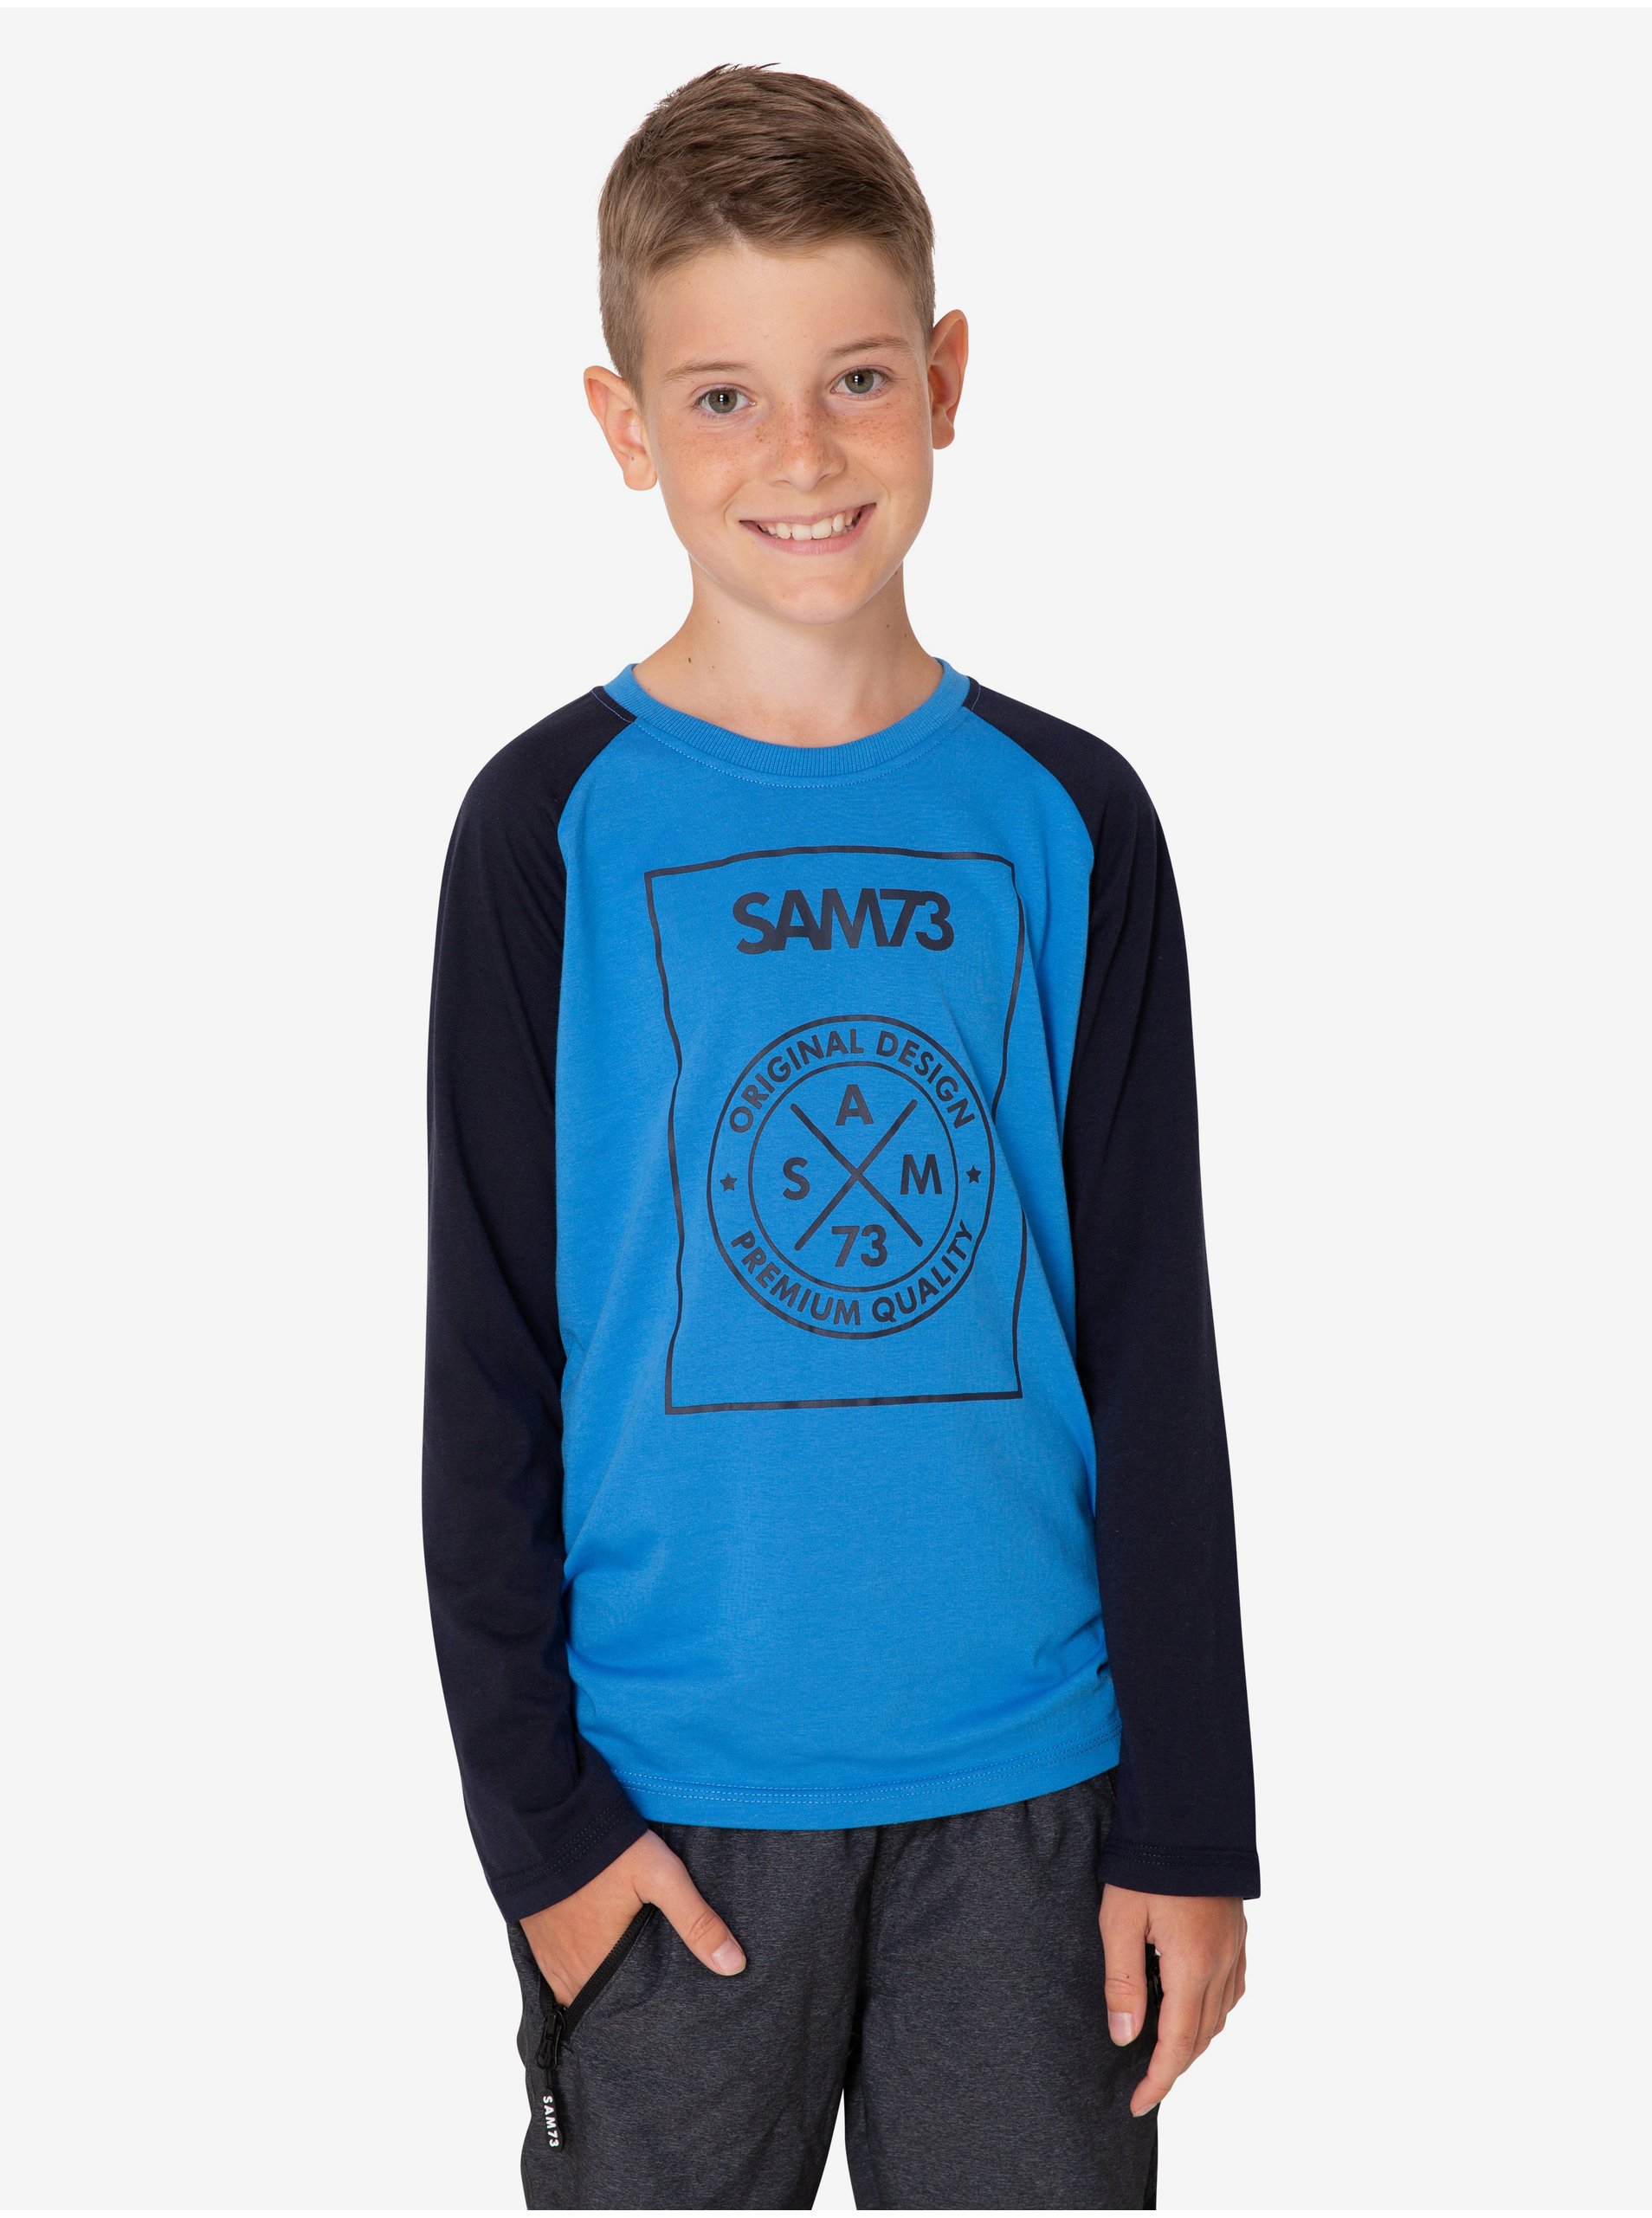 Lacno Čierno-modré chlapčenské tričko SAM 73 Jack